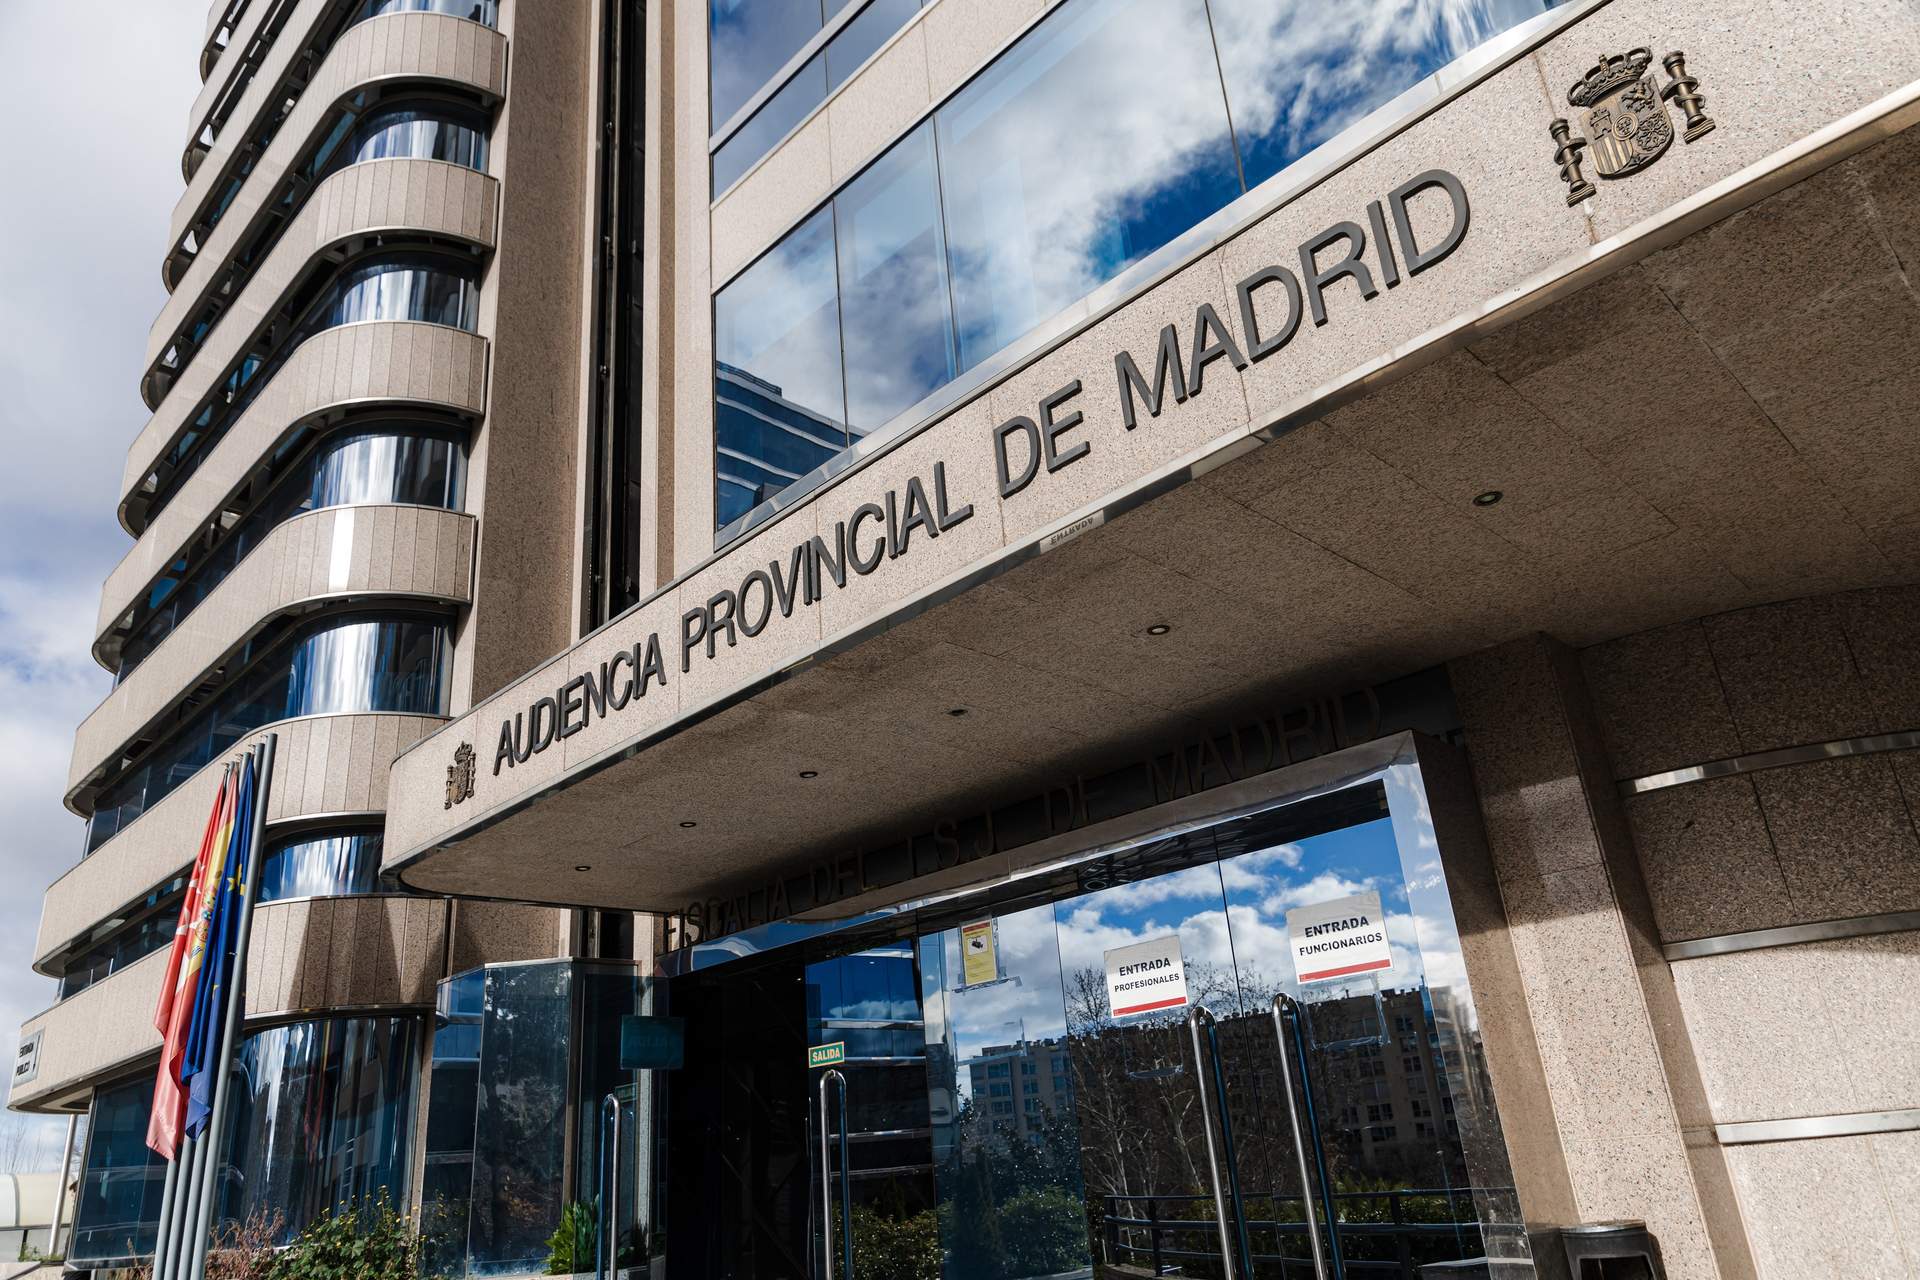 La Audiencia de Madrid confirma el archivo de la denuncia de amenazas de López Madrid contra la doctora Pinto